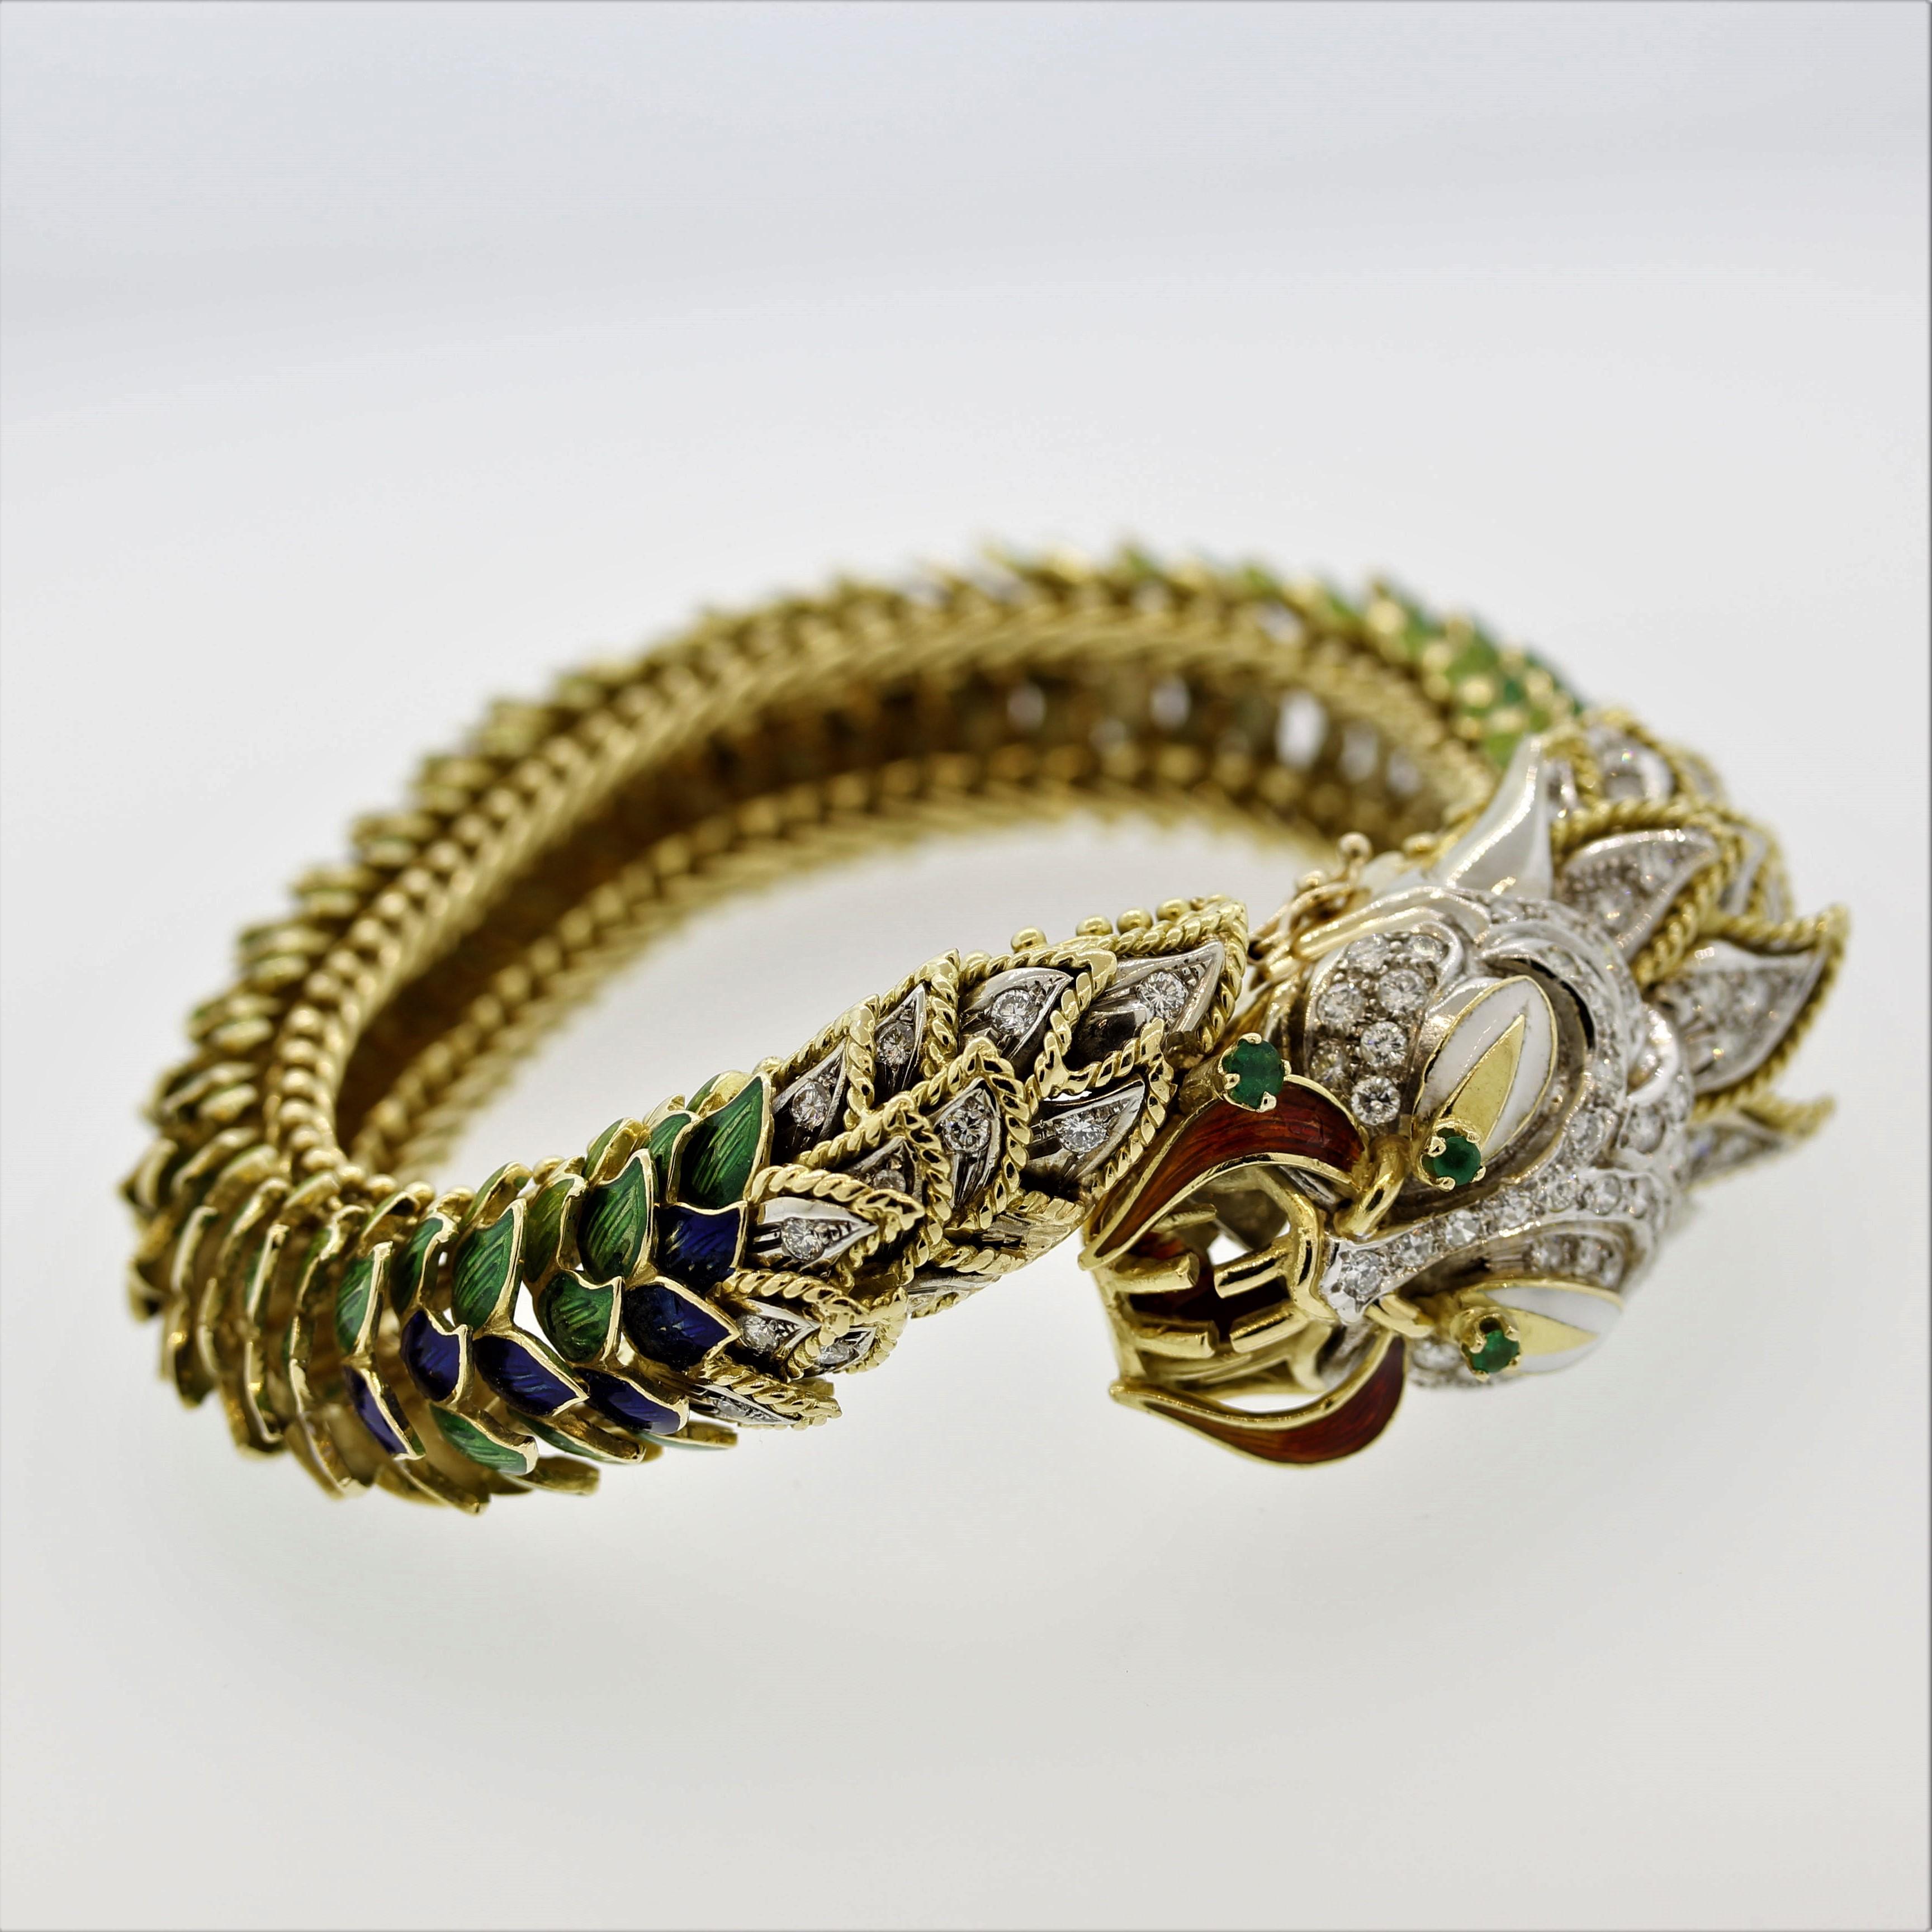 Un bracelet dragon extraordinaire et exceptionnellement détaillé. Le bracelet a été fabriqué par les meilleurs orfèvres d'Italie. L'armature en or 18 carats des dragons a été conçue de manière experte pour permettre à chaque ensemble d'écailles de